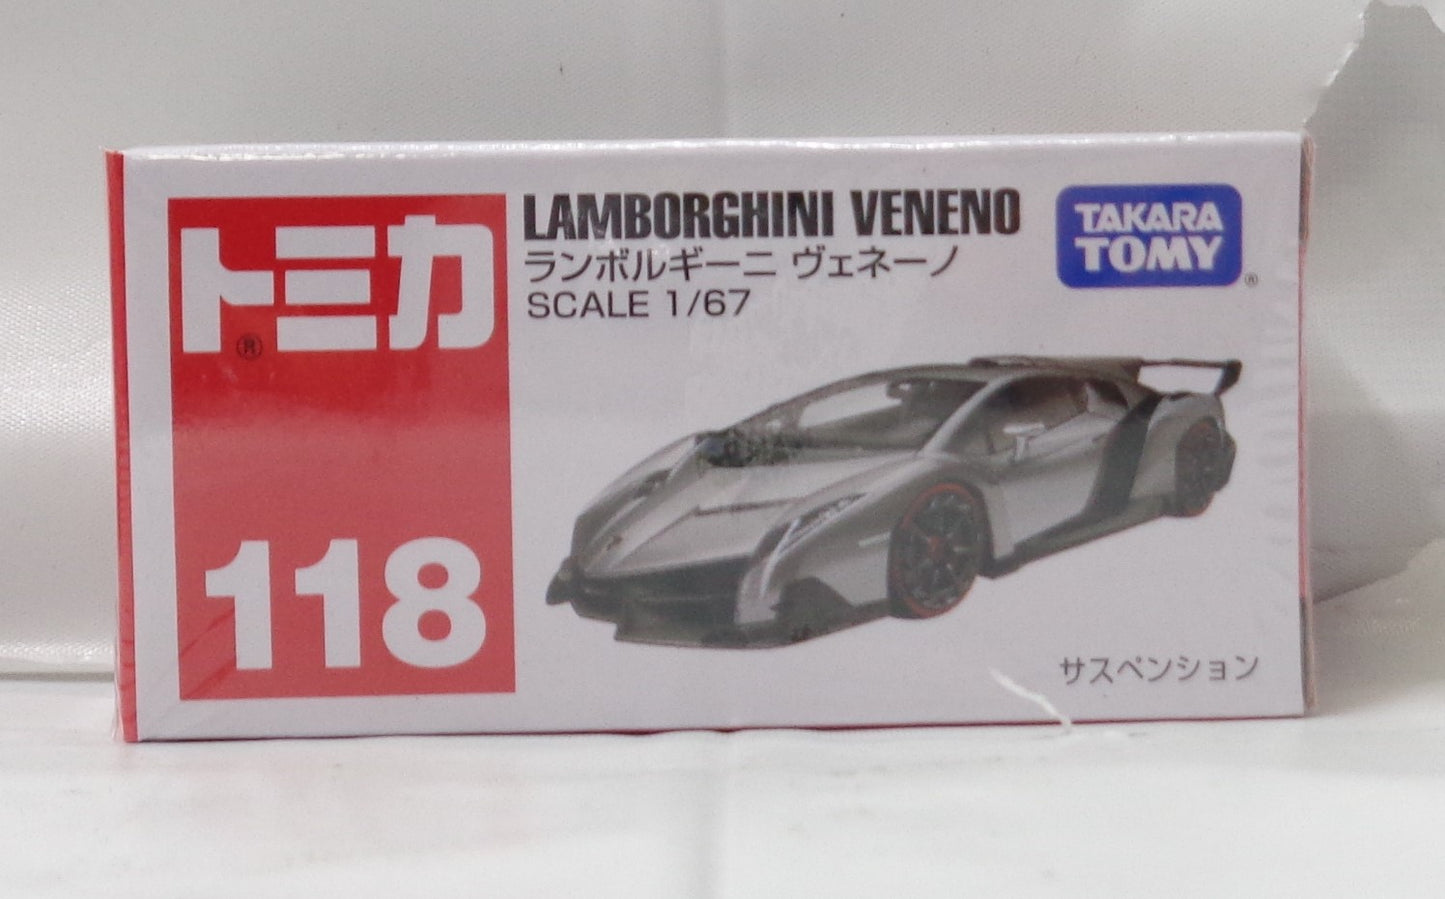 TOMICA Red Box 118 - Lamborghini Veneno